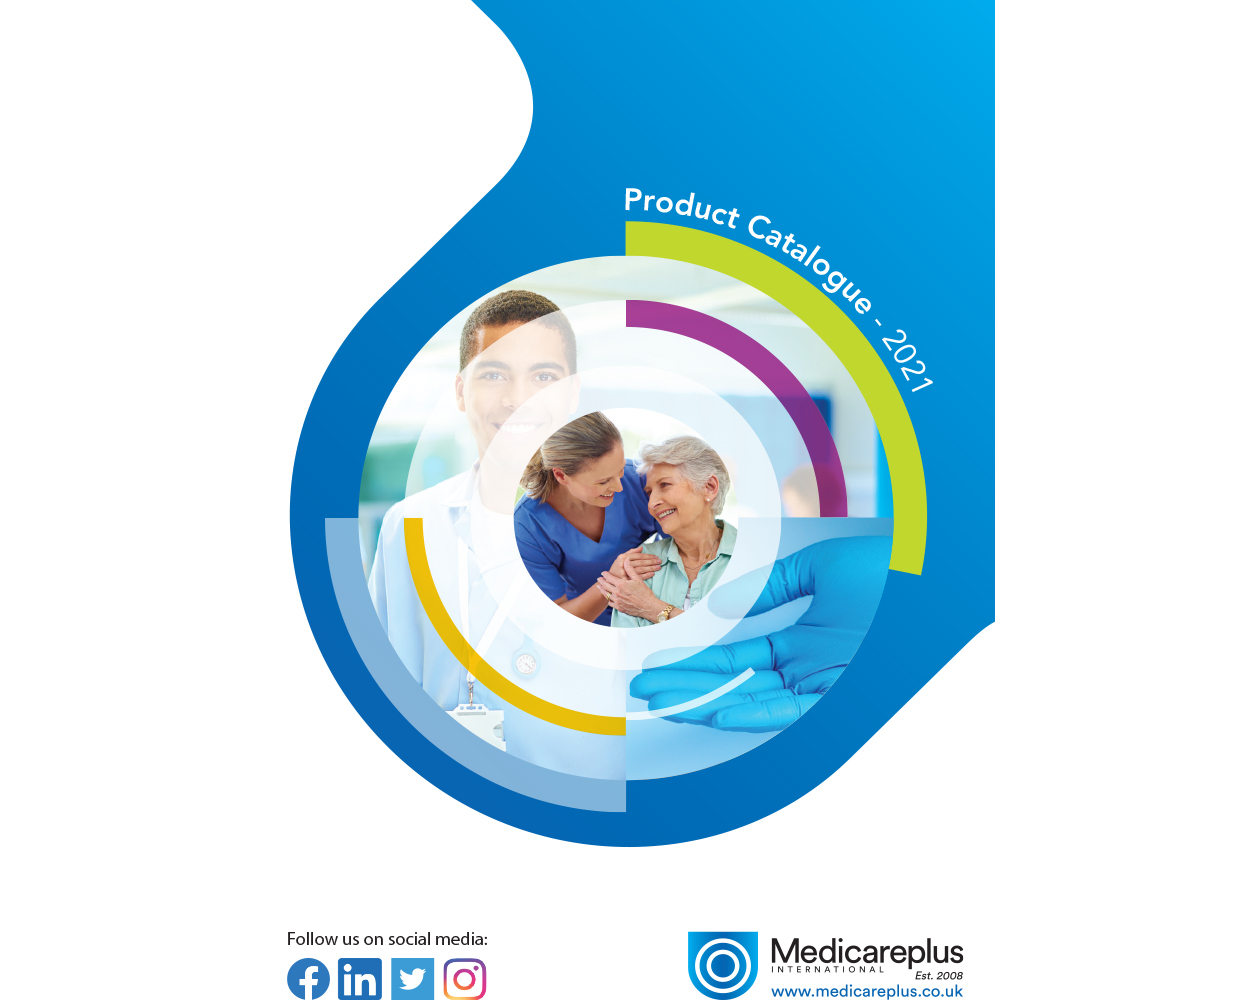 Medicareplus Product catalogue - Jan 2021